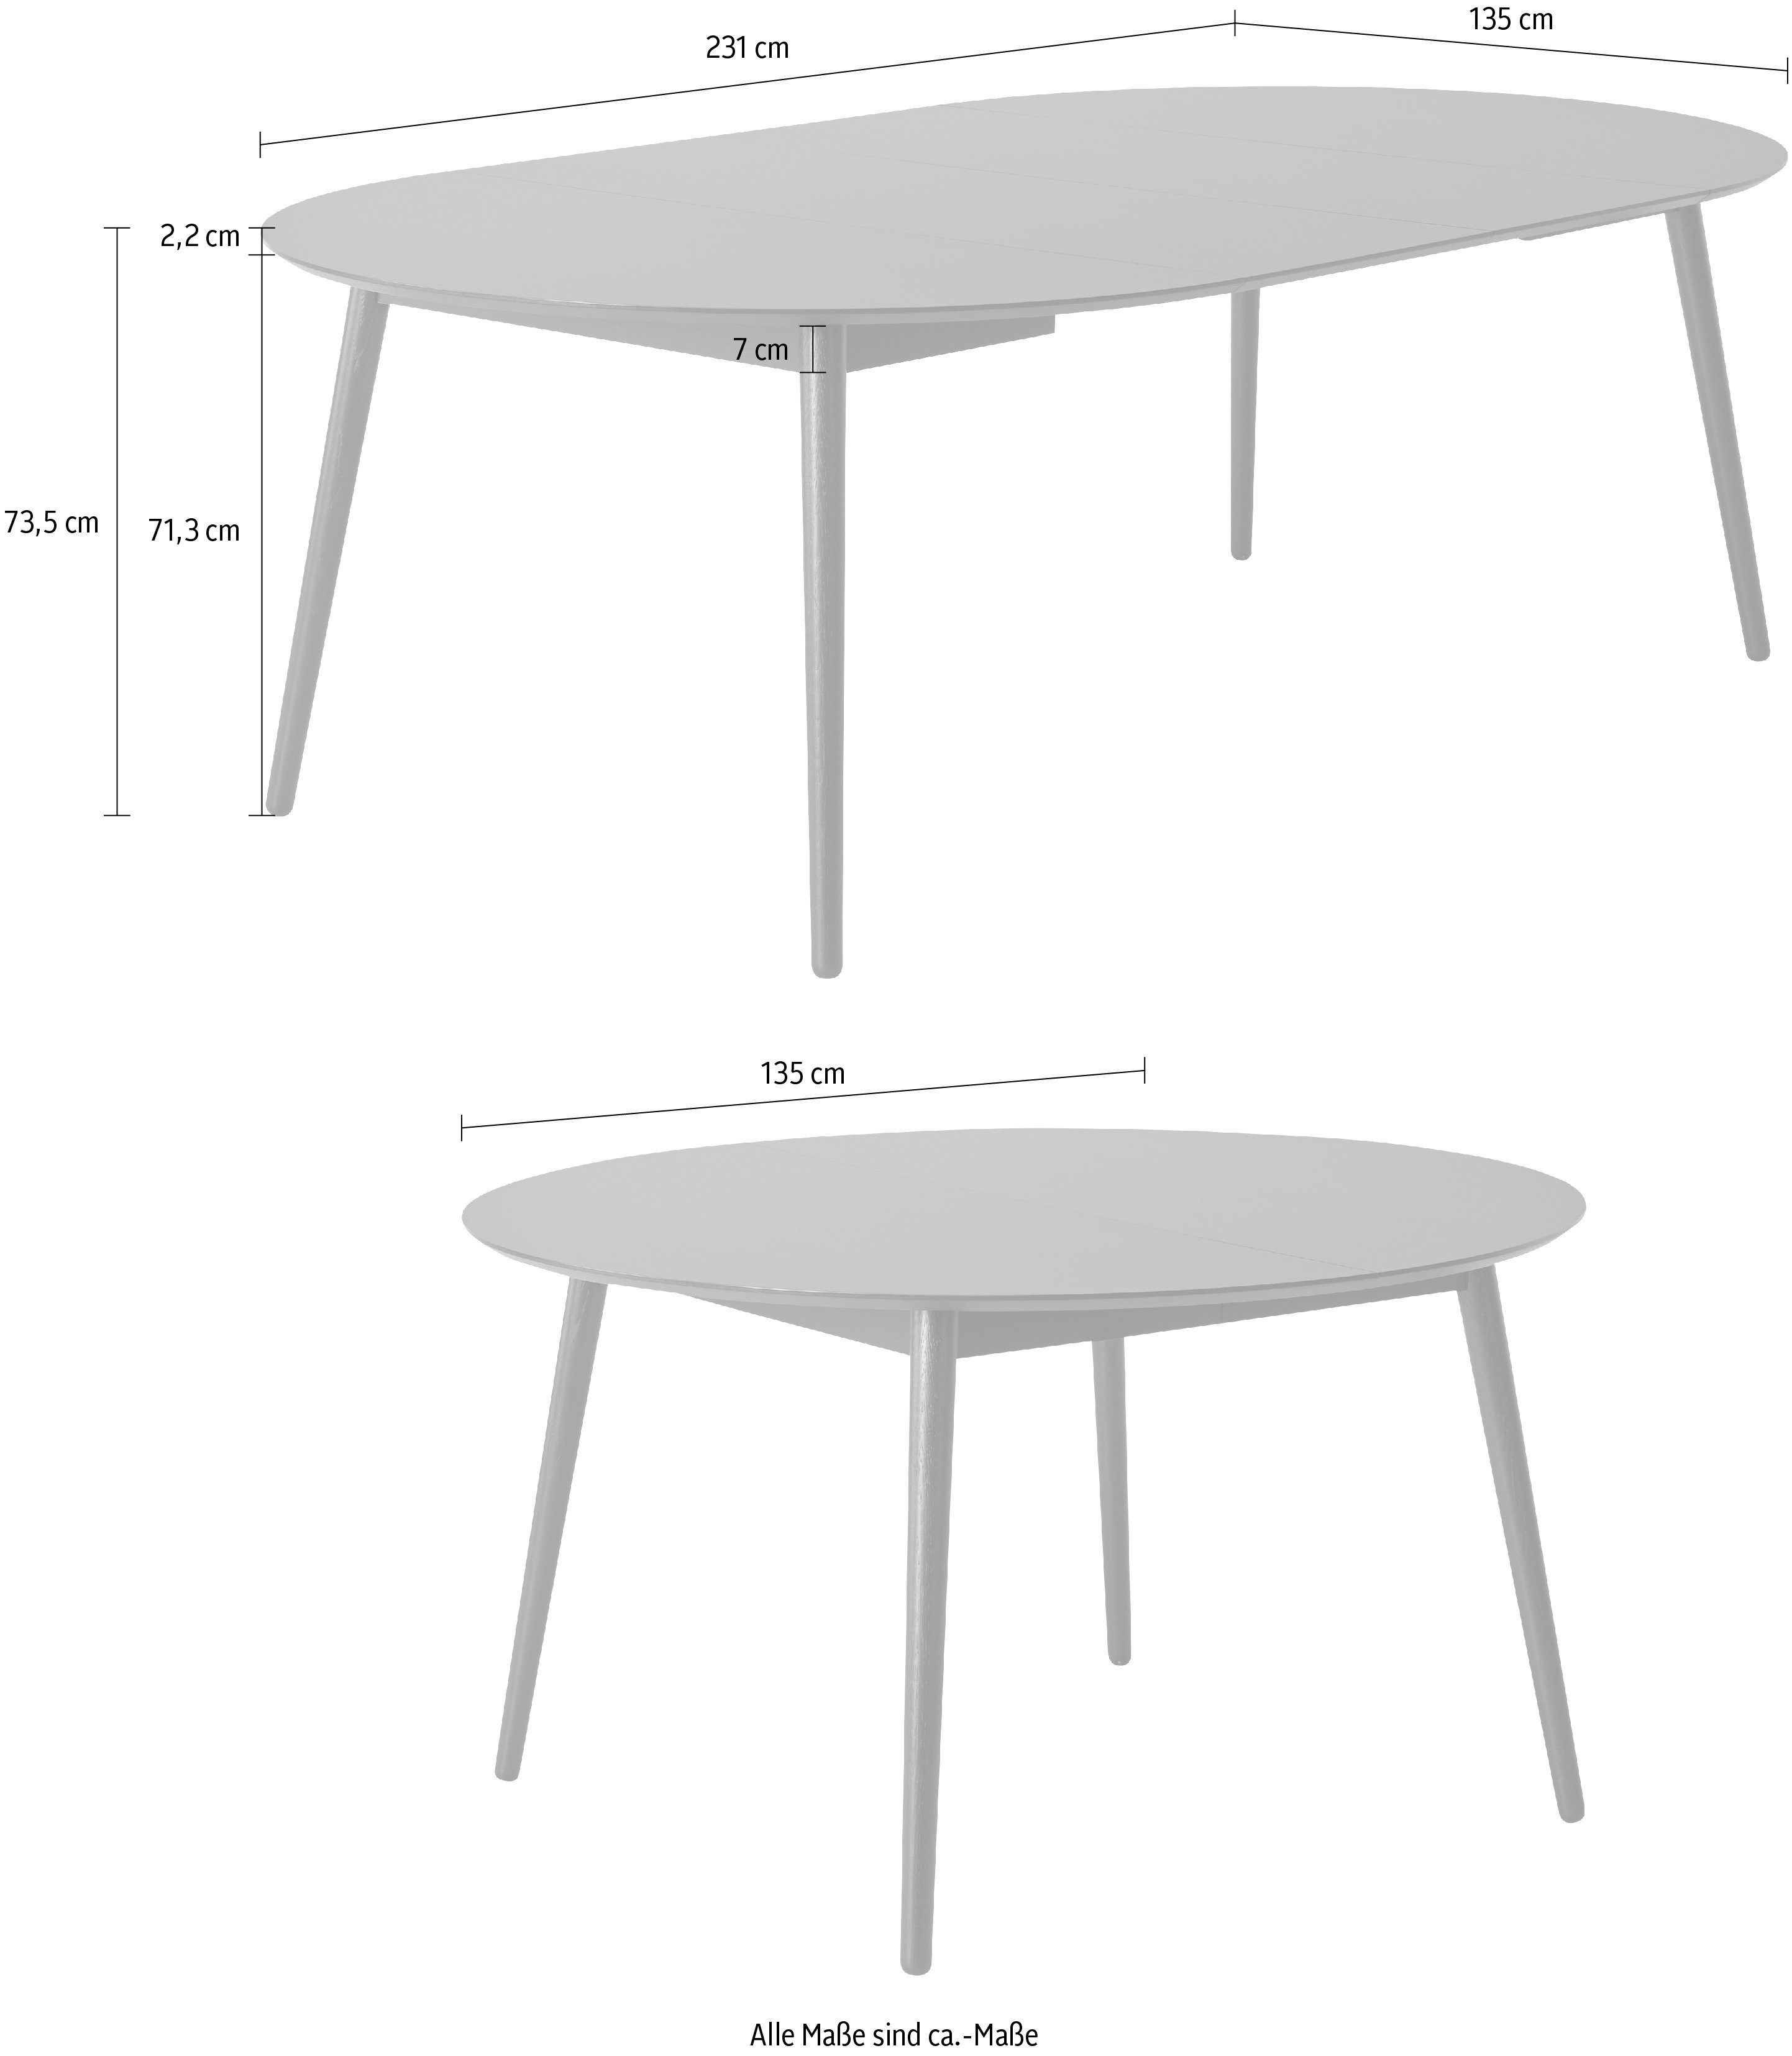 Hammel Furniture Esstisch Meza by Tischplatte aus Naturfarben cm, Ø135(231) MDF/Laminat, Massivholzgestell Hammel, runde